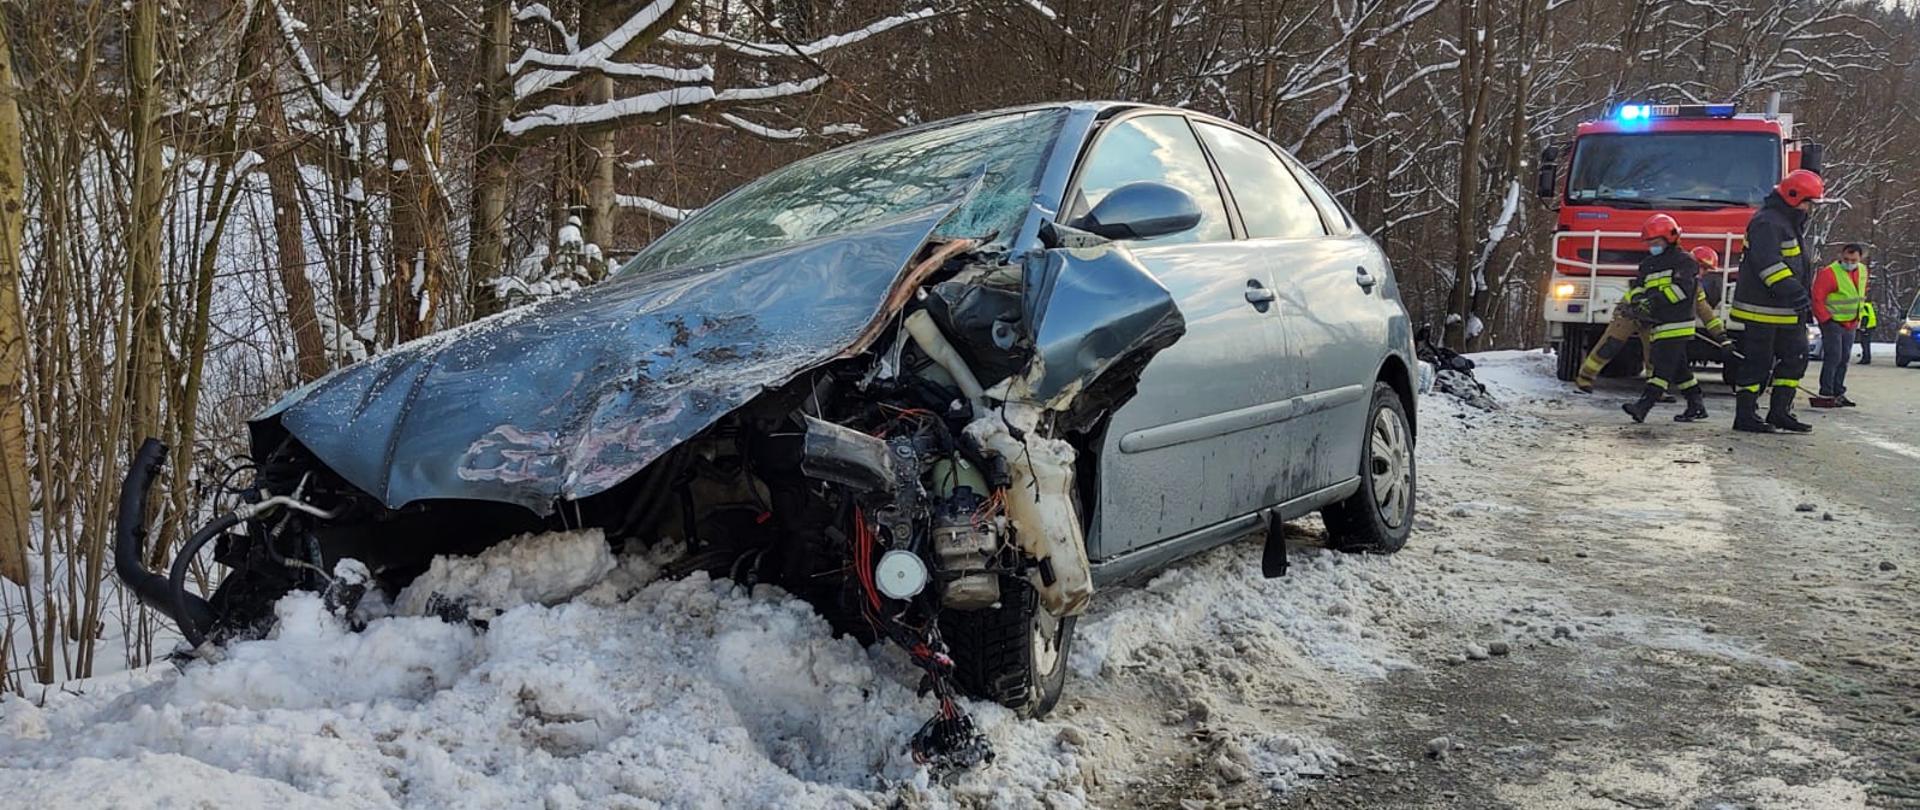 Samochód z rozbitym przodem stoi na zaśnieżonym poboczu. W tle pracujący strażacy oraz samochód pożarniczy.